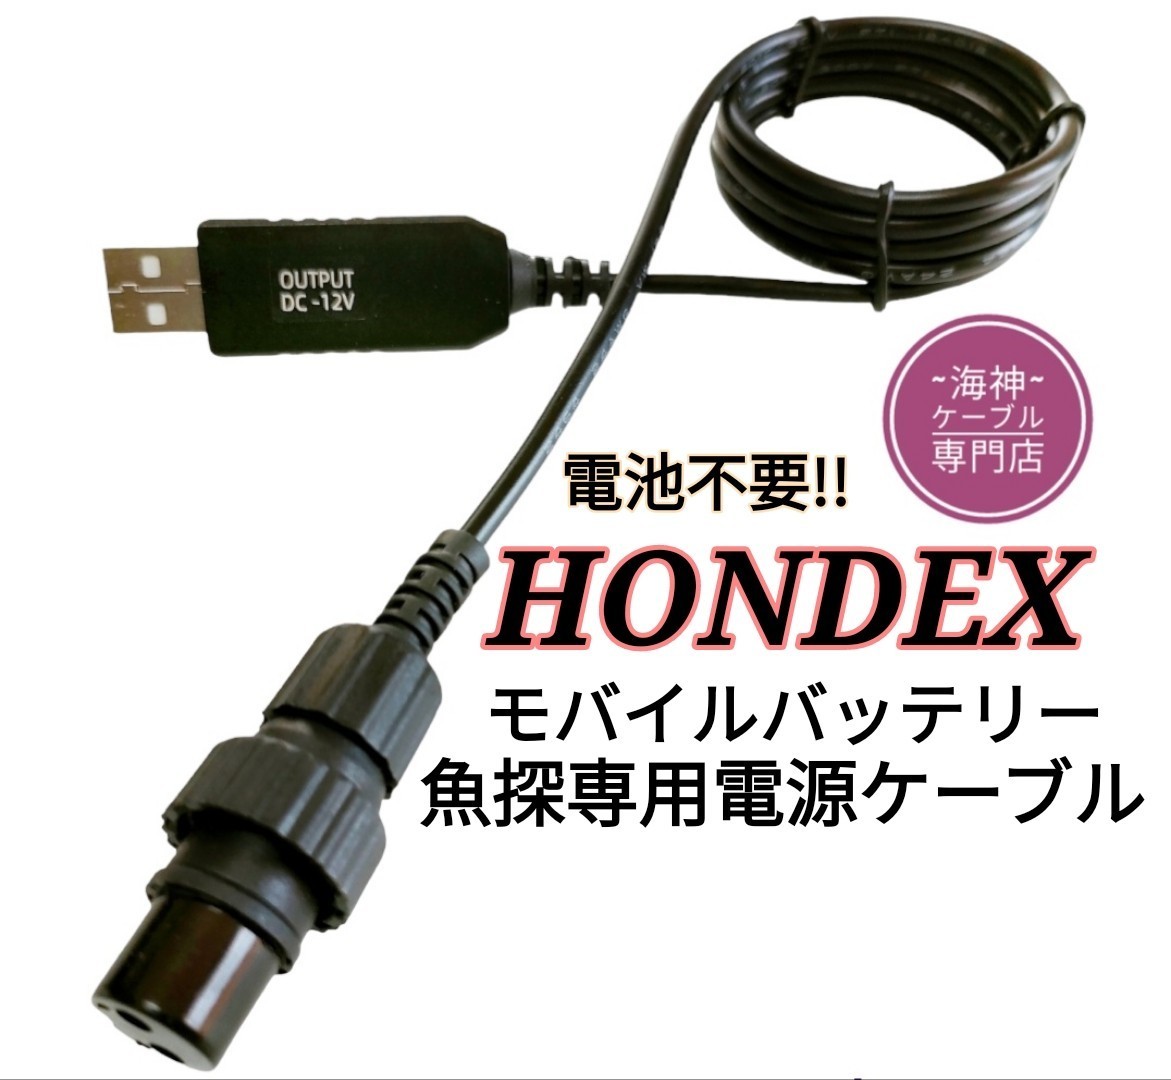 ホンデックス(HONDEX)魚探を12Vバッテリーで動かす為の電源ケーブル 3m